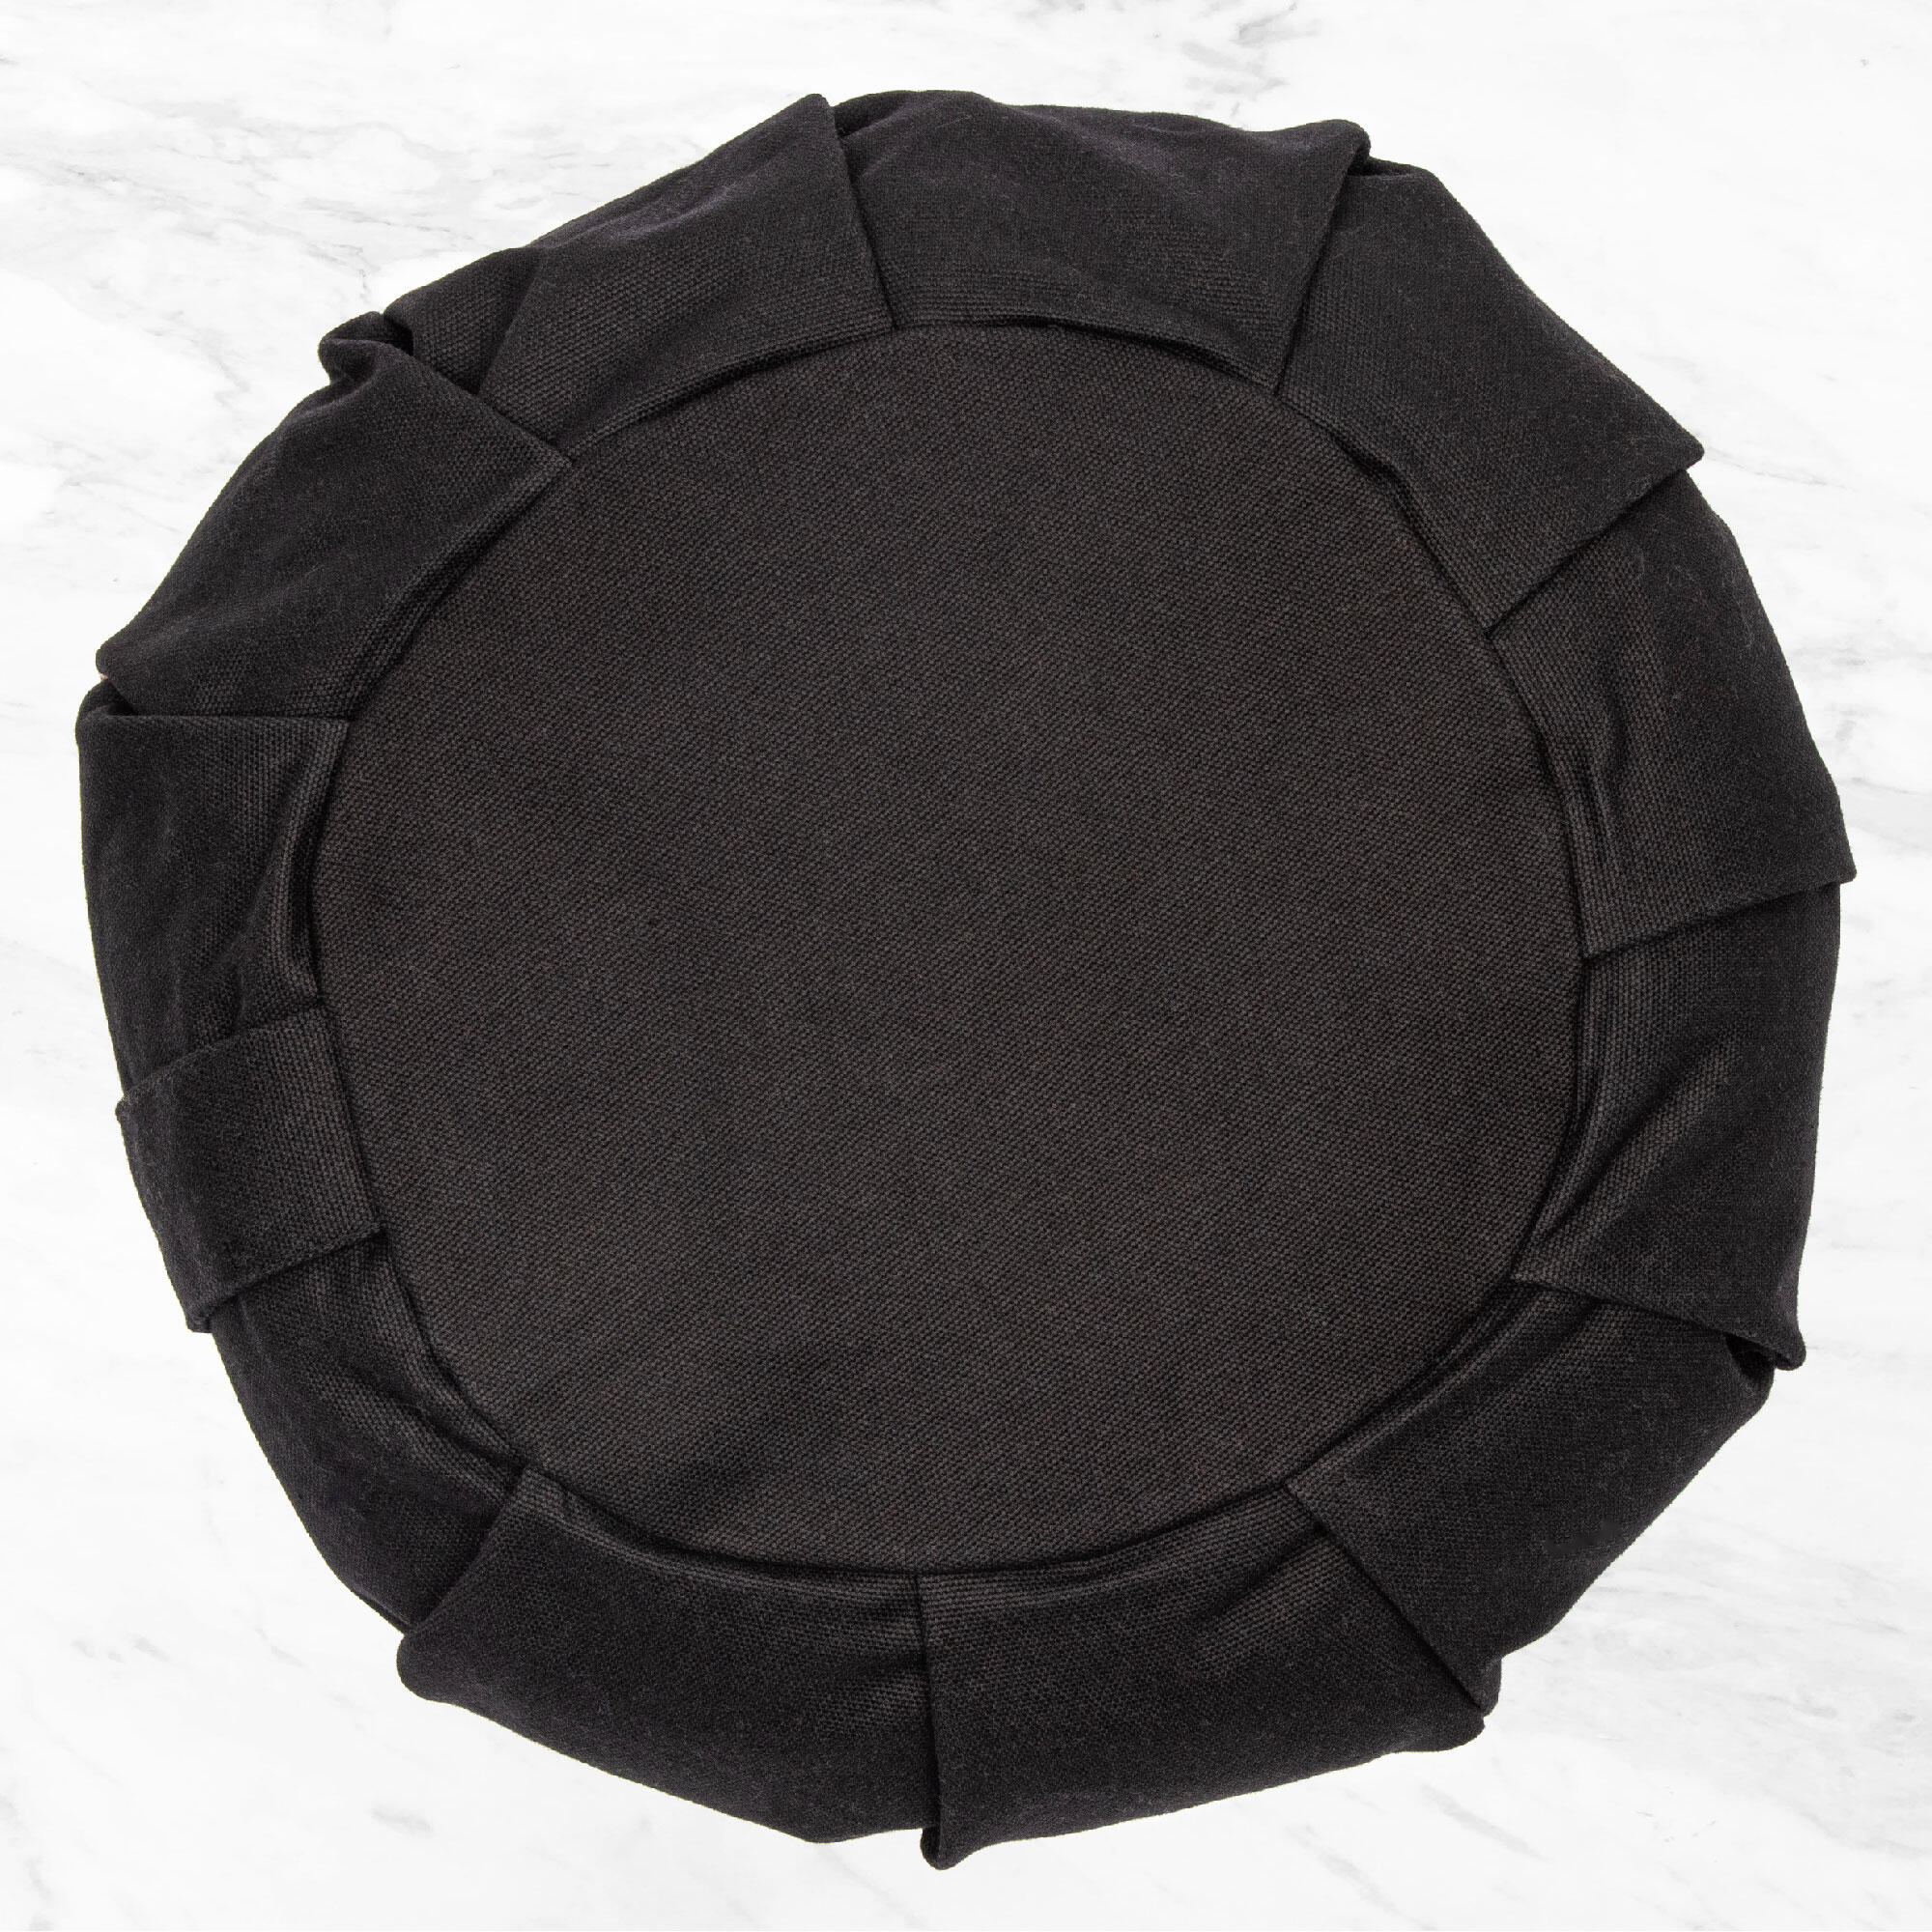 Myga Zafu Meditation Cushion - Black 2/8